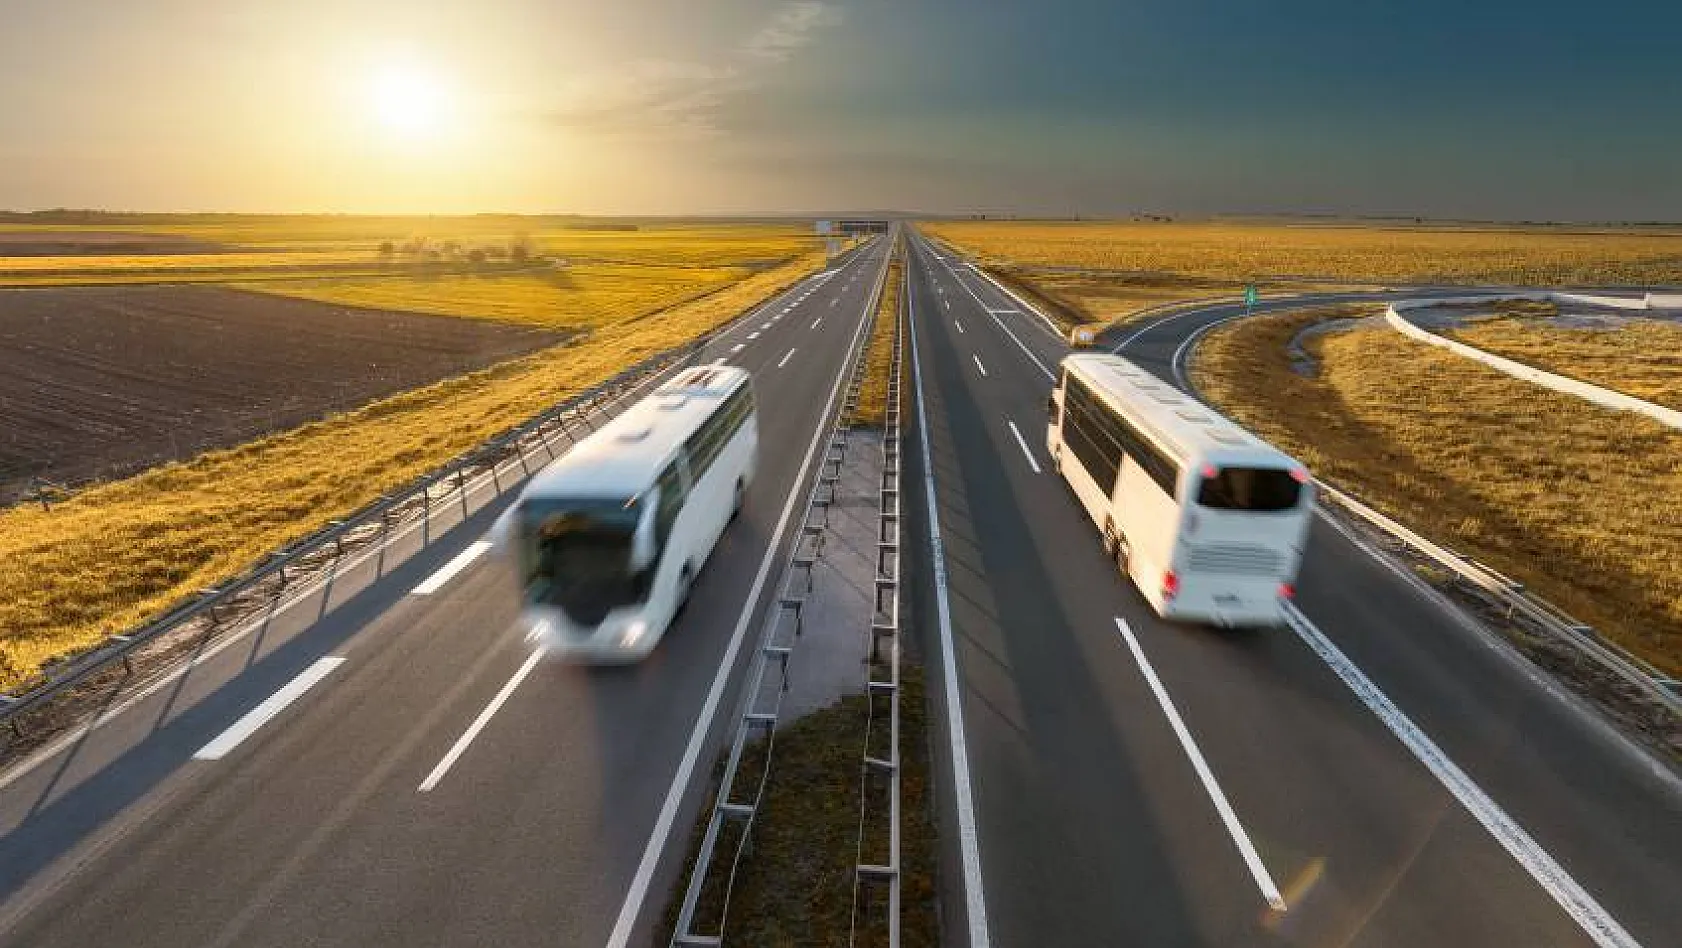 Konforlu ve Uygun Fiyata Otobüs Yolculuğu Nasıl Planlanır?